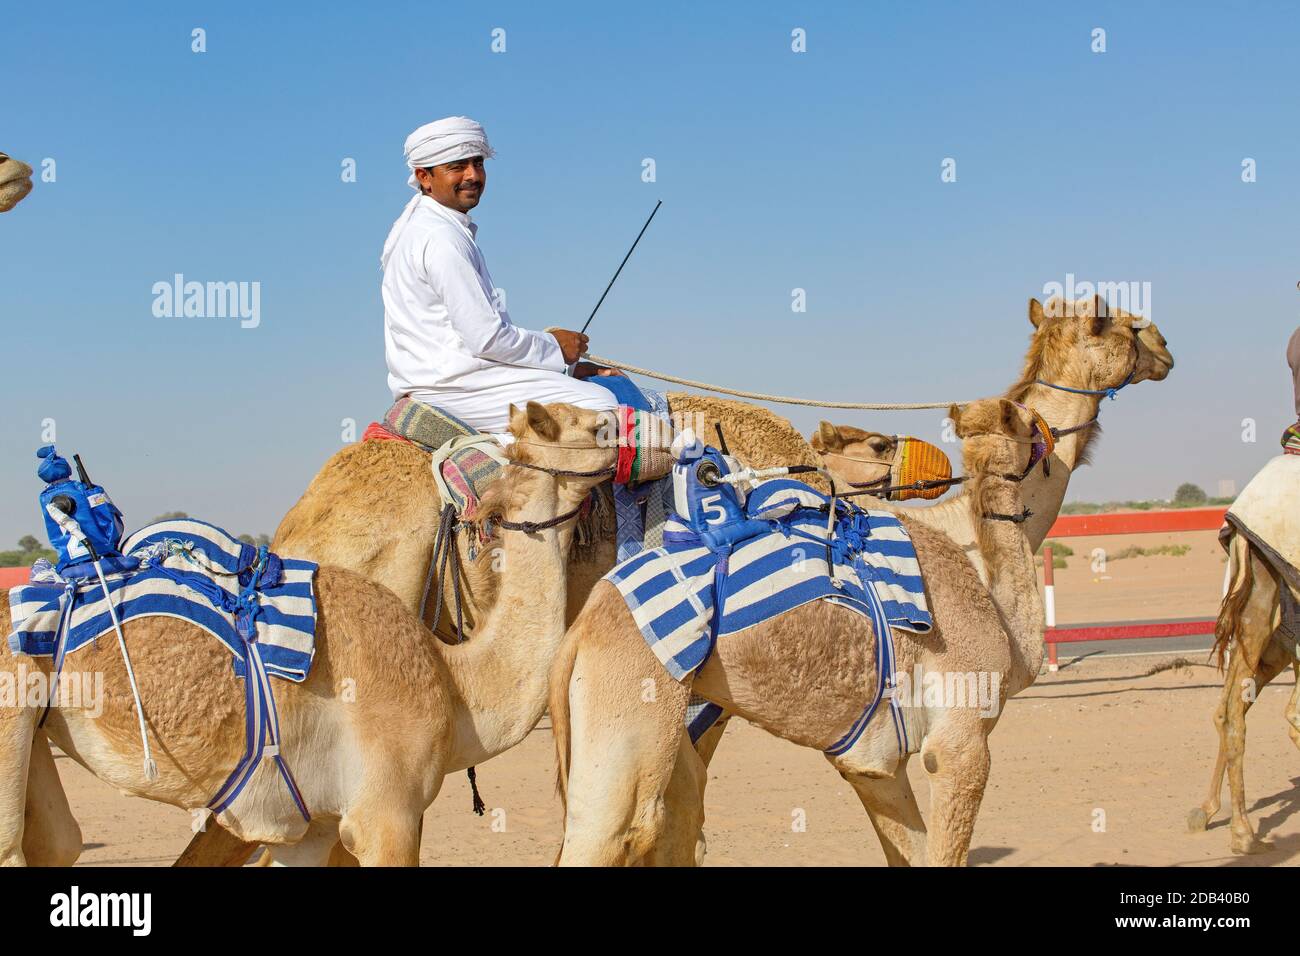 Vereinigte Arabische Emirate / Al Dhaid / Kamelrennen in Zentrale Region des Emirats Sharjah in den Vereinigten Staaten Arabische EmirateDie Handler sichern auch kleine Ele Stockfoto